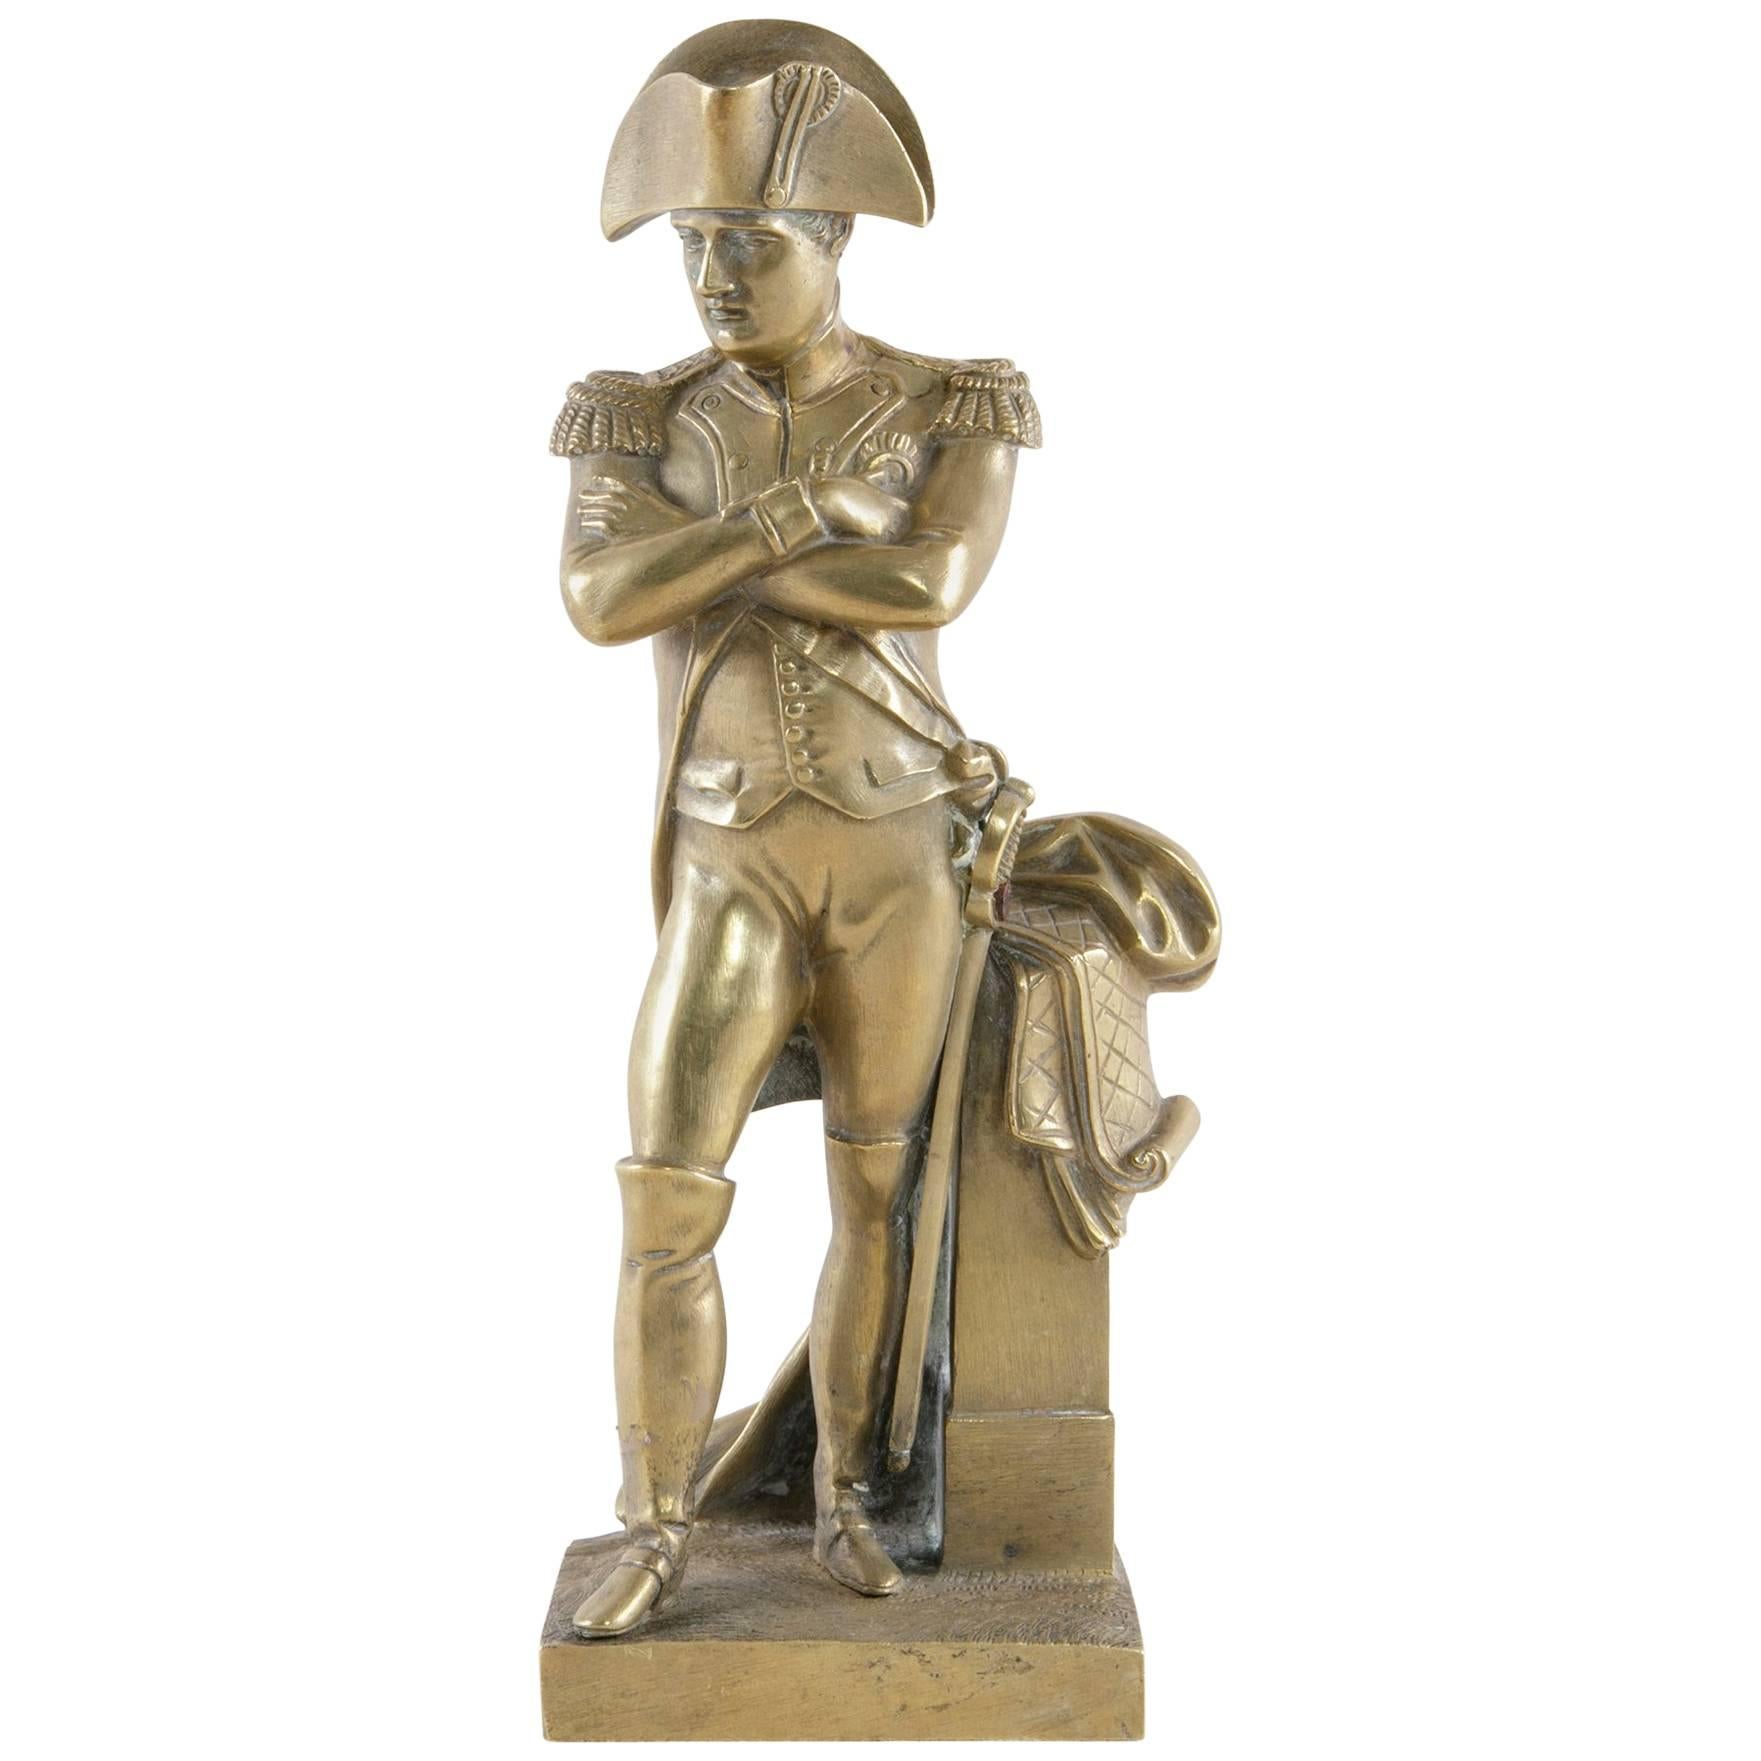 Late 19th Century French Bronze Statue or Sculpture of Napoleon Bonaparte